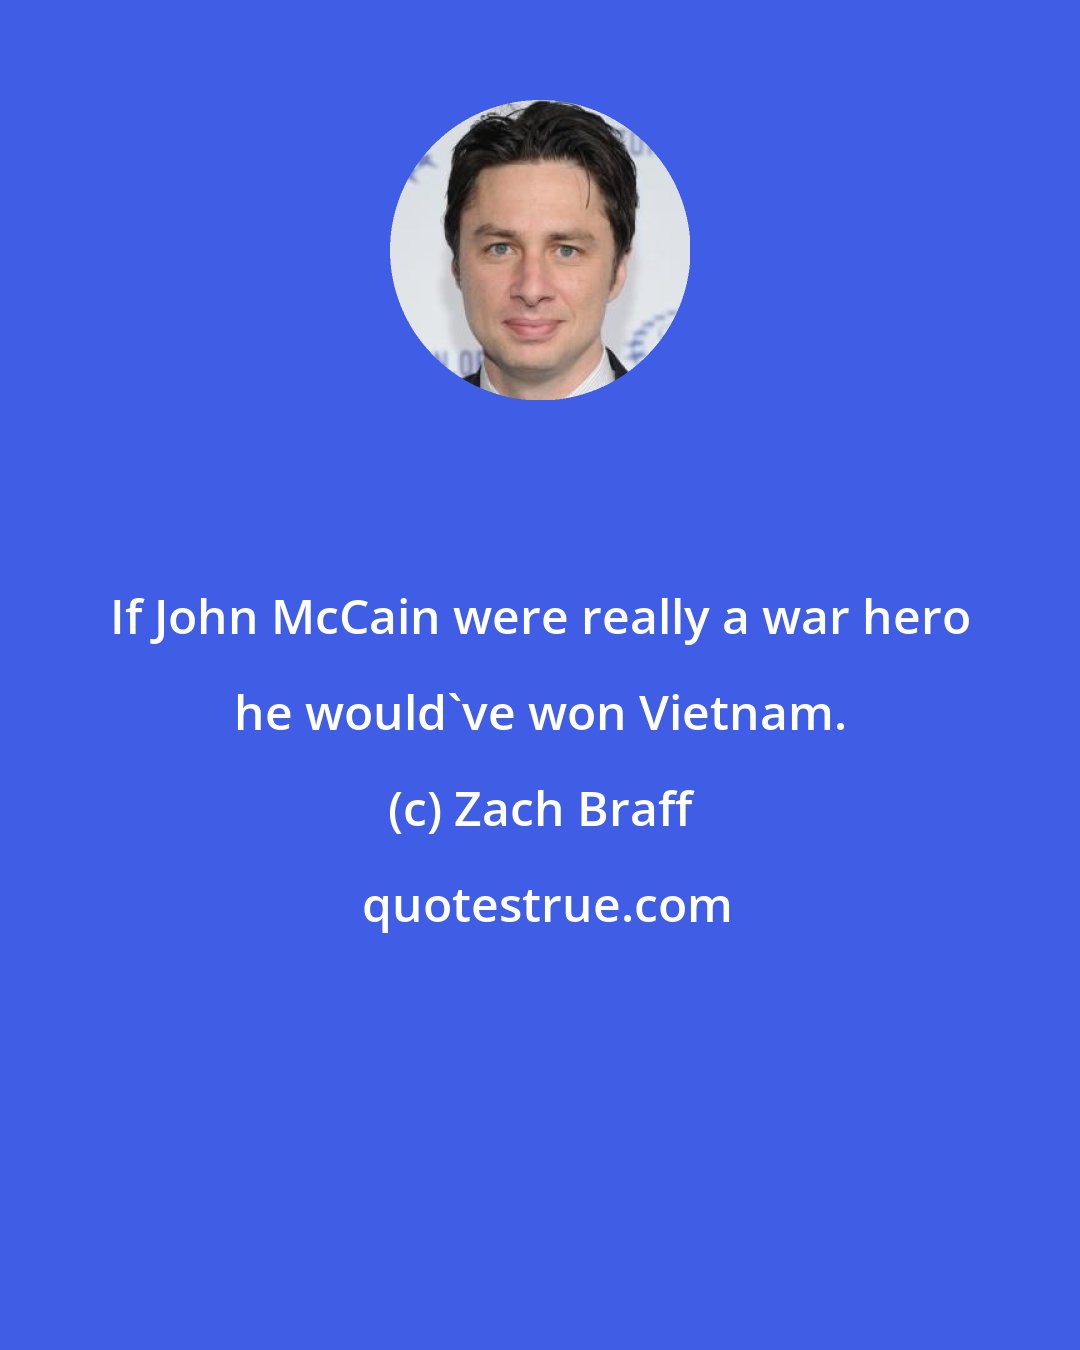 Zach Braff: If John McCain were really a war hero he would've won Vietnam.